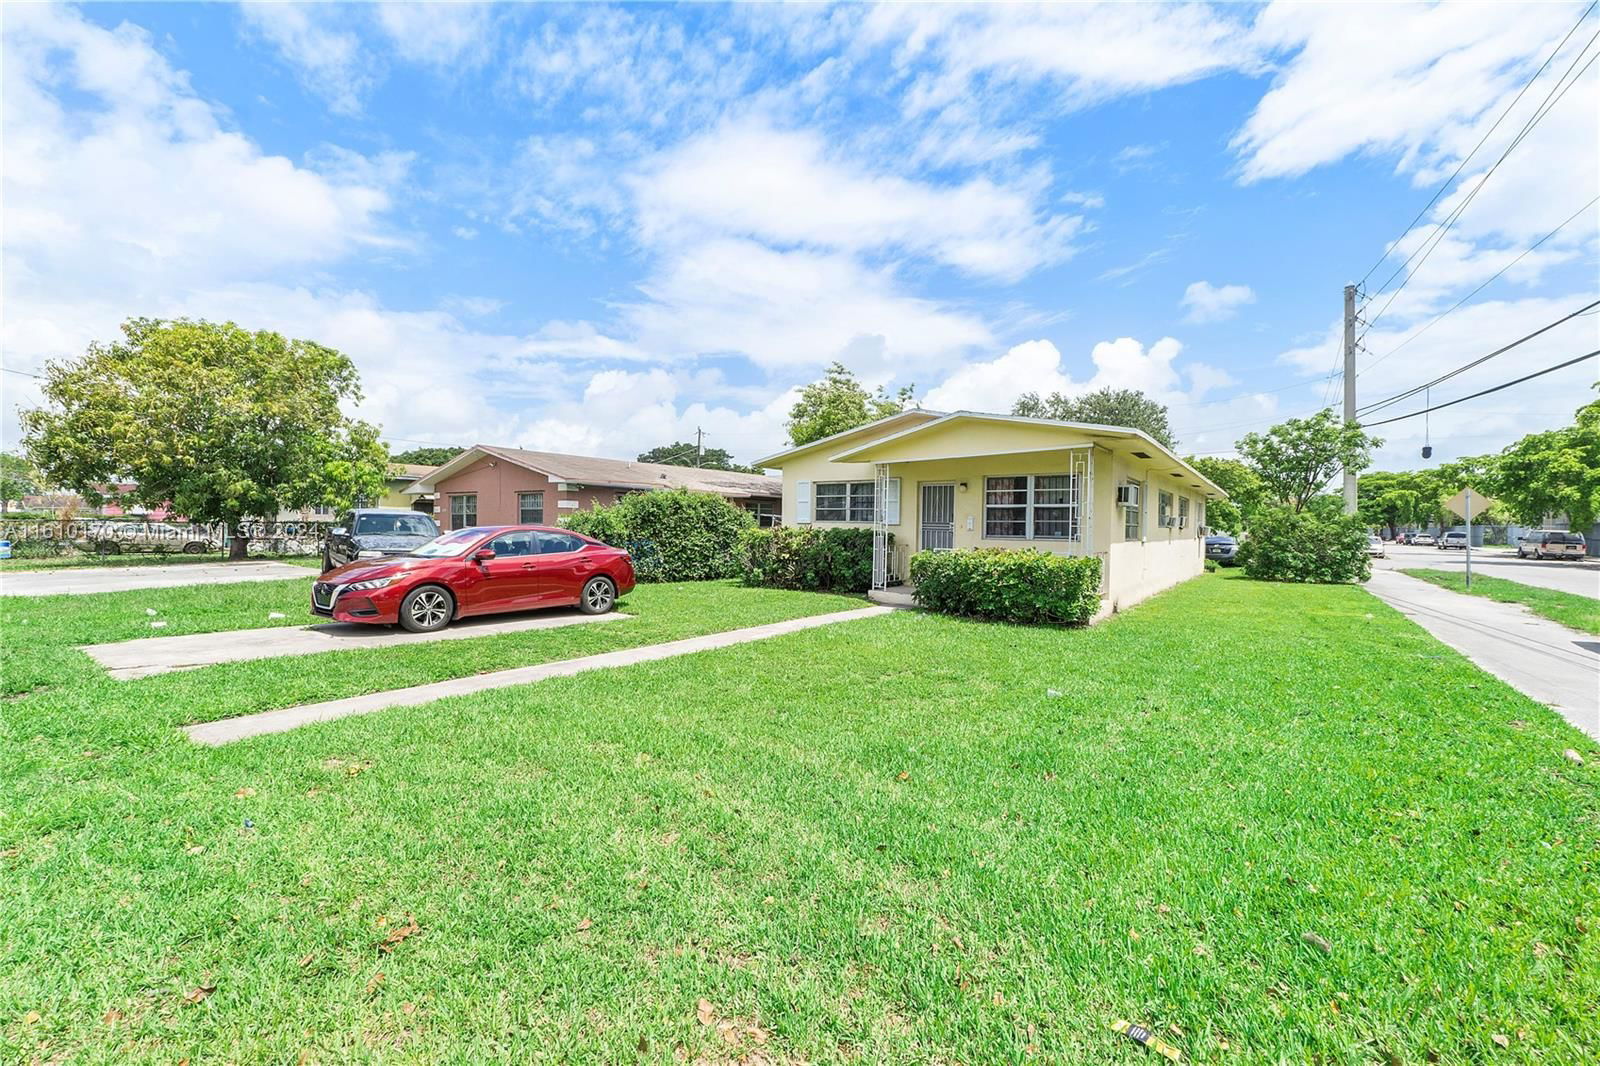 Real estate property located at 2100 65th St, Miami-Dade County, ORANGE RIDGE, Miami, FL